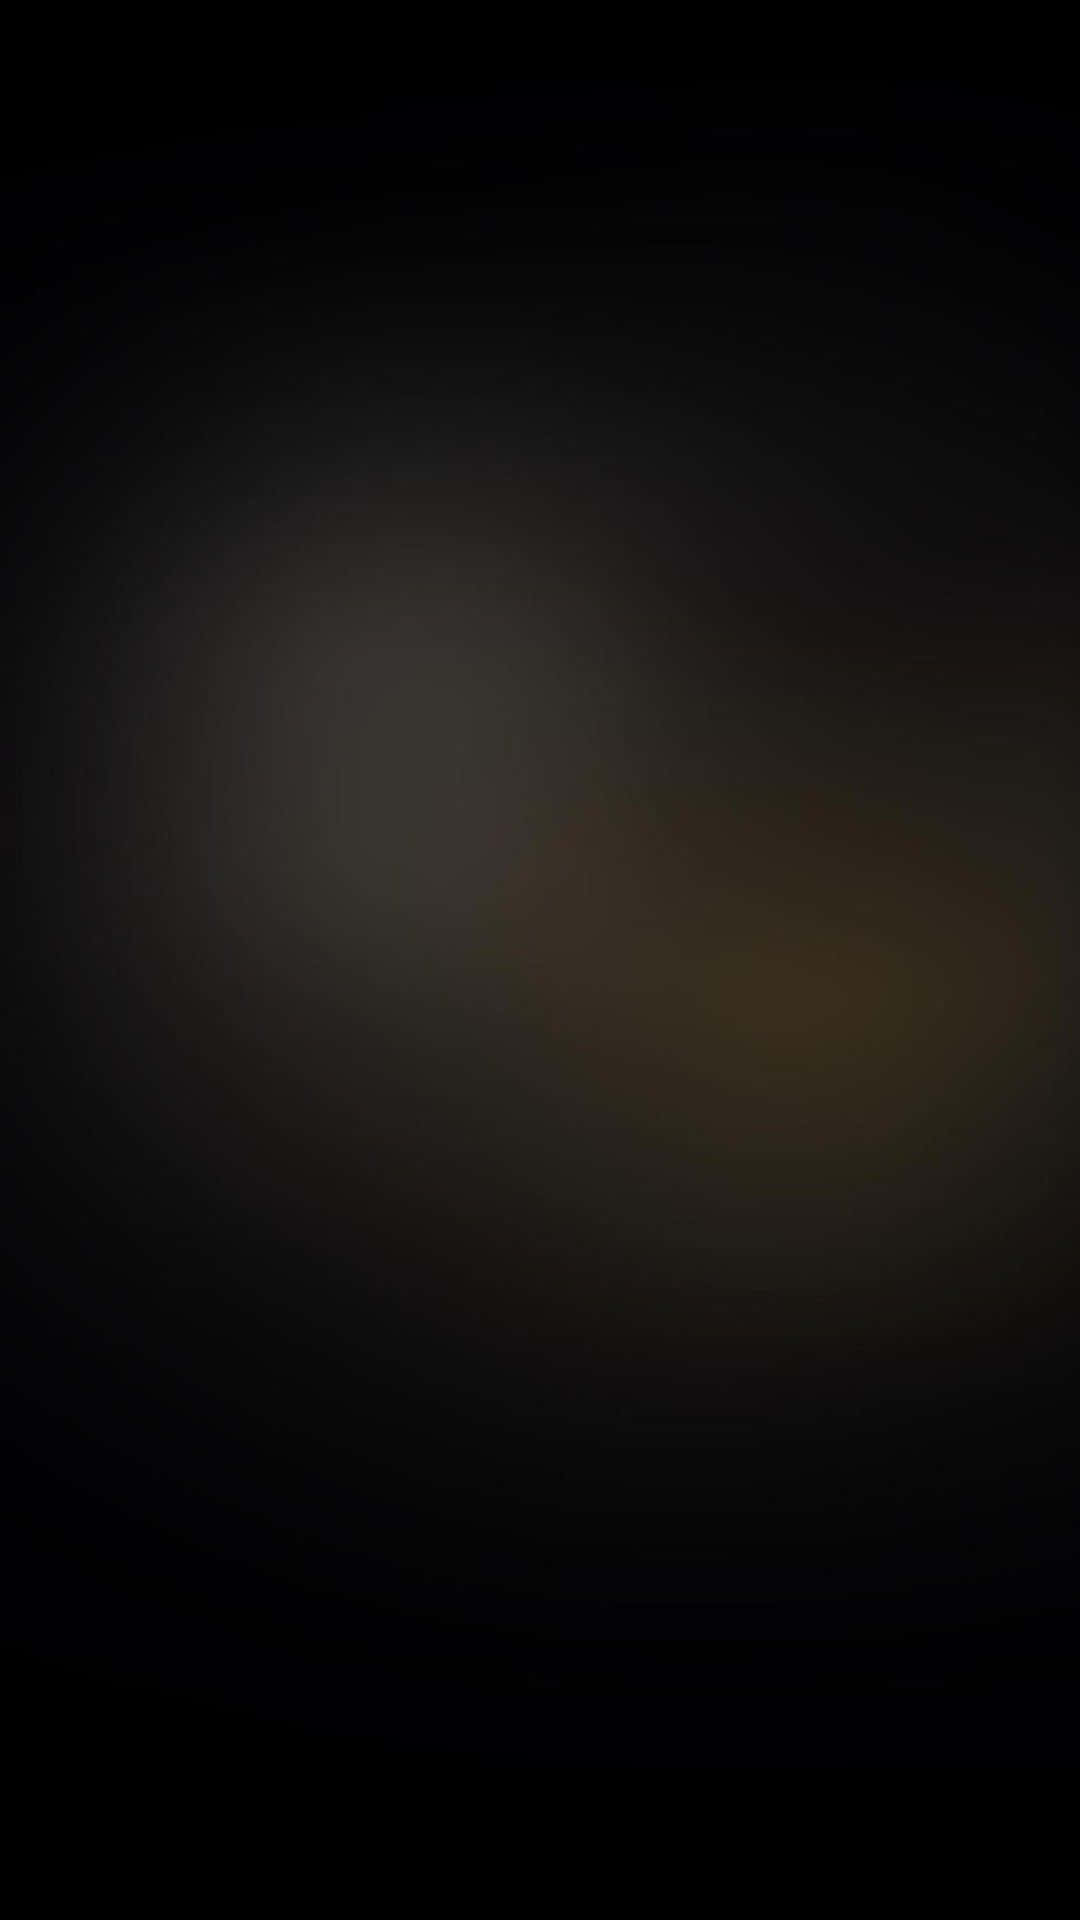 A Mystifying Black Blur Background